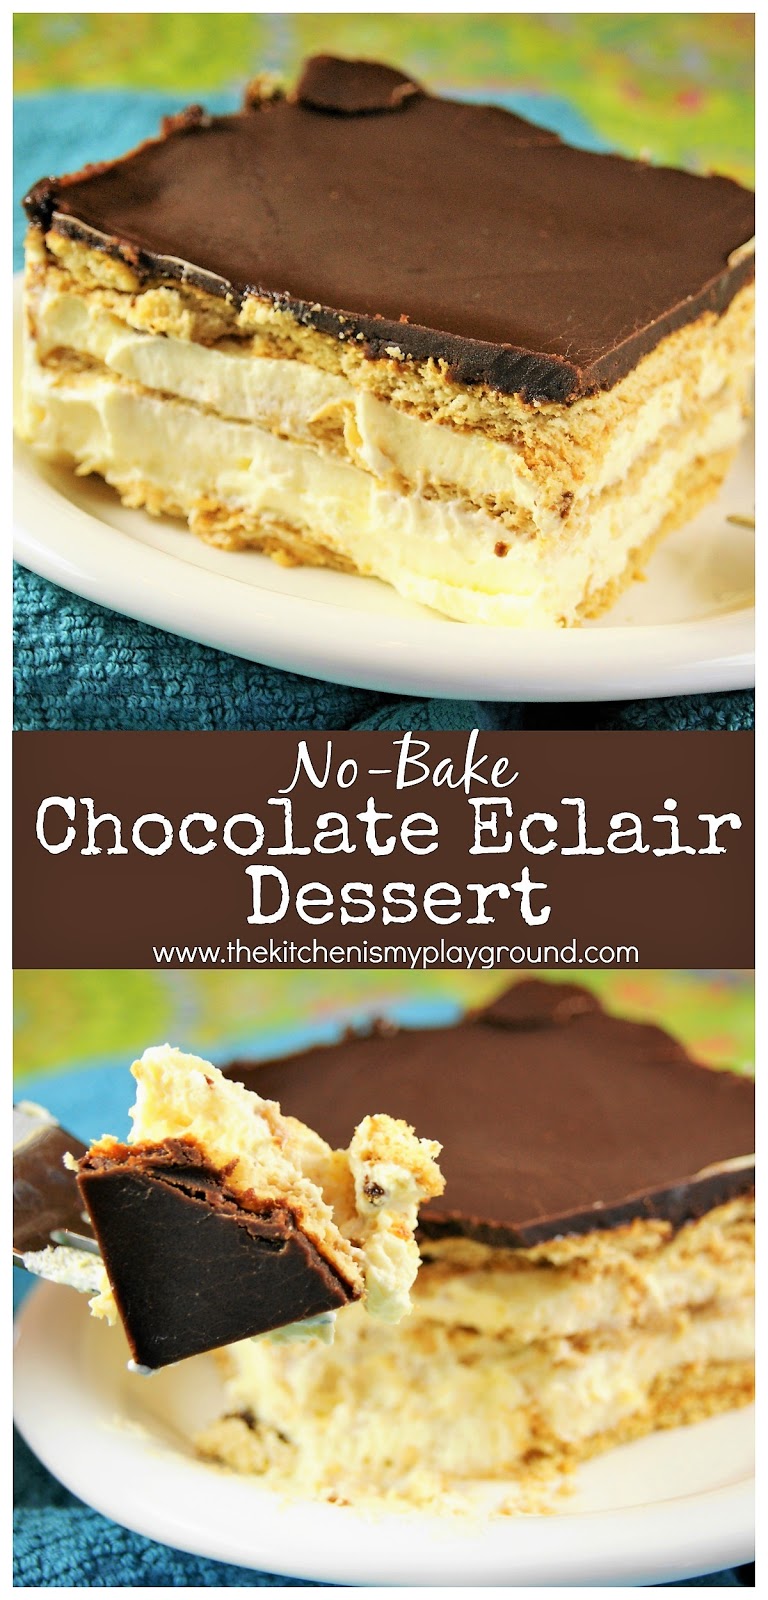 No-Bake Chocolate Eclair Dessert | The Kitchen is My Playground